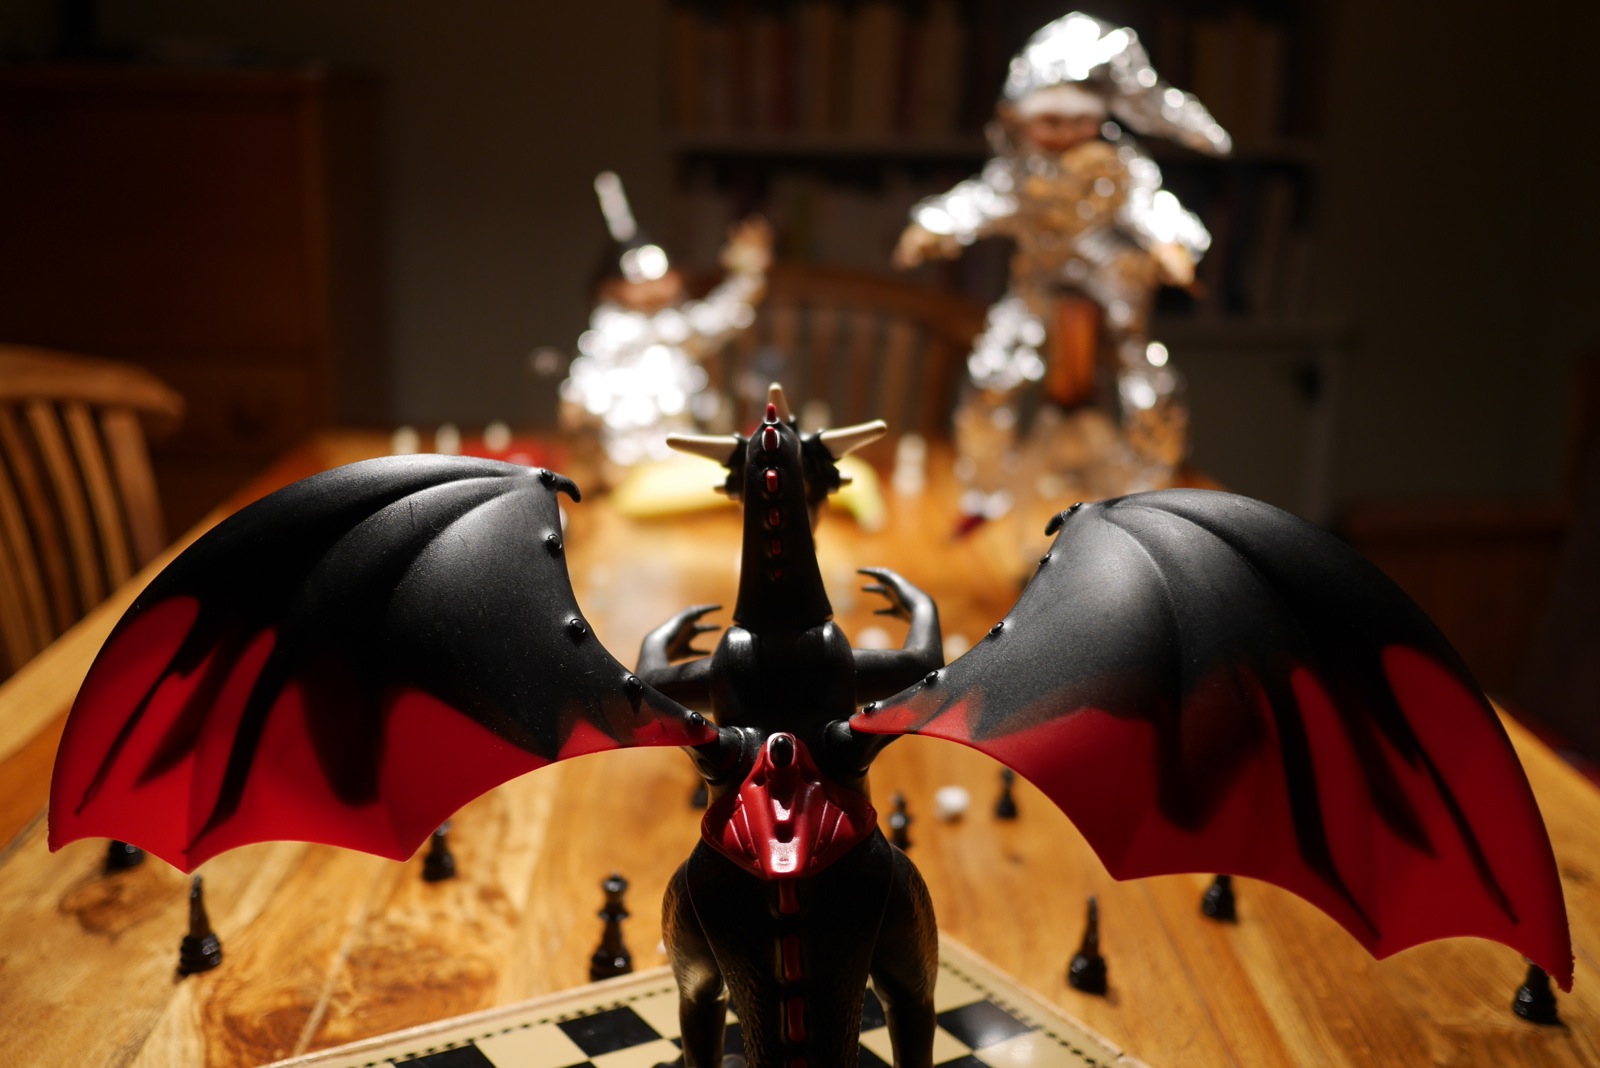 La bête affrontée par nos chevaliers: le dragon Playmobil dans toute sa splendeur.